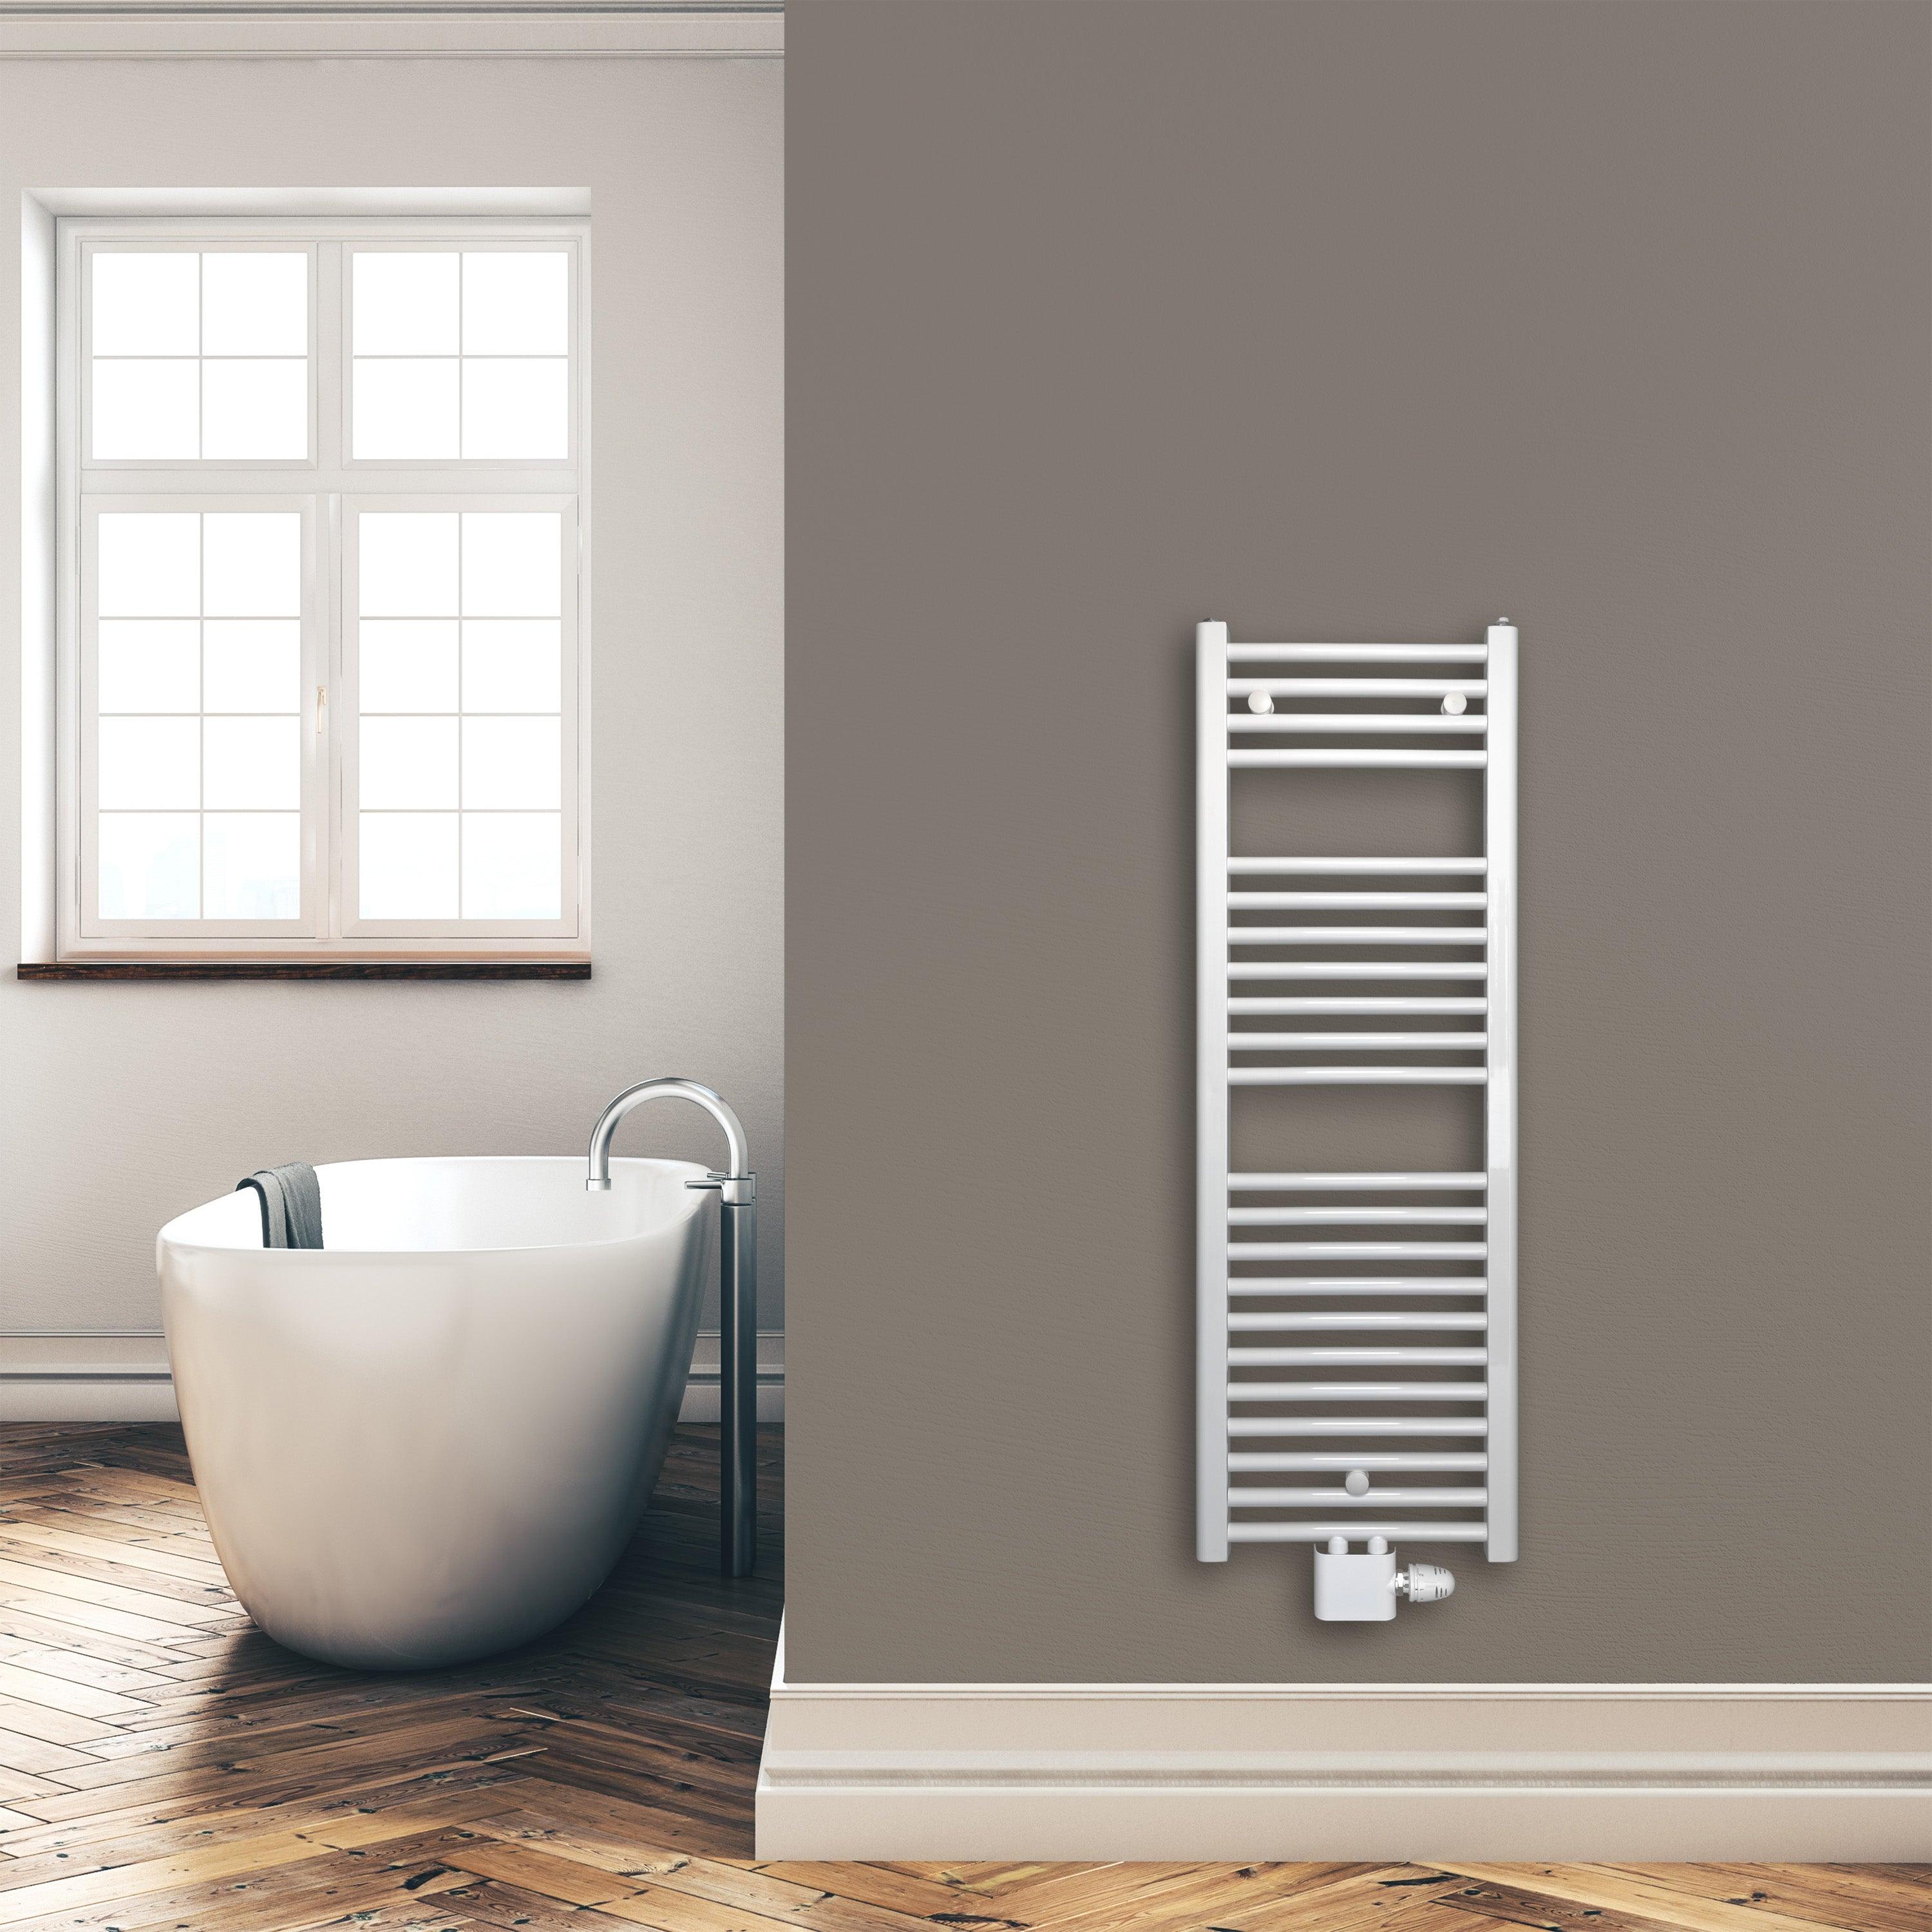 Badheizkörper 1160 x 400 mm gerade mit Mittenanschluss Handtuchhalter Badezimmer Heizung Handtuchwärmer weiß Montagebeispiel - heizkoerper.shop